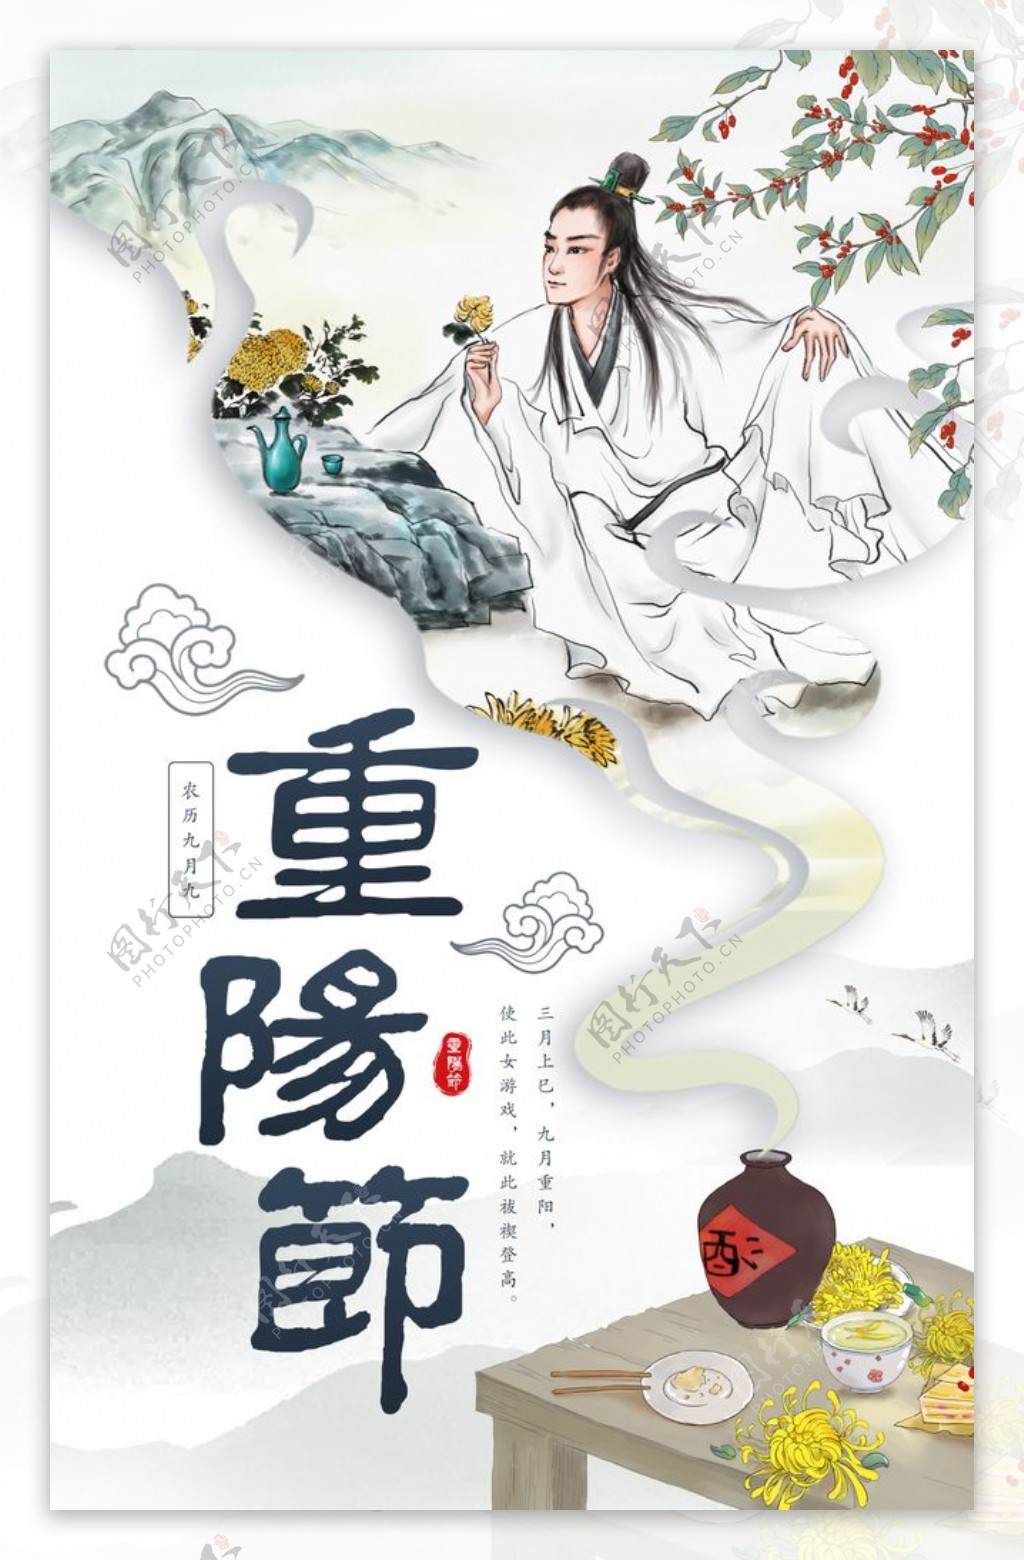 重阳节节日促销宣传海报素材图片